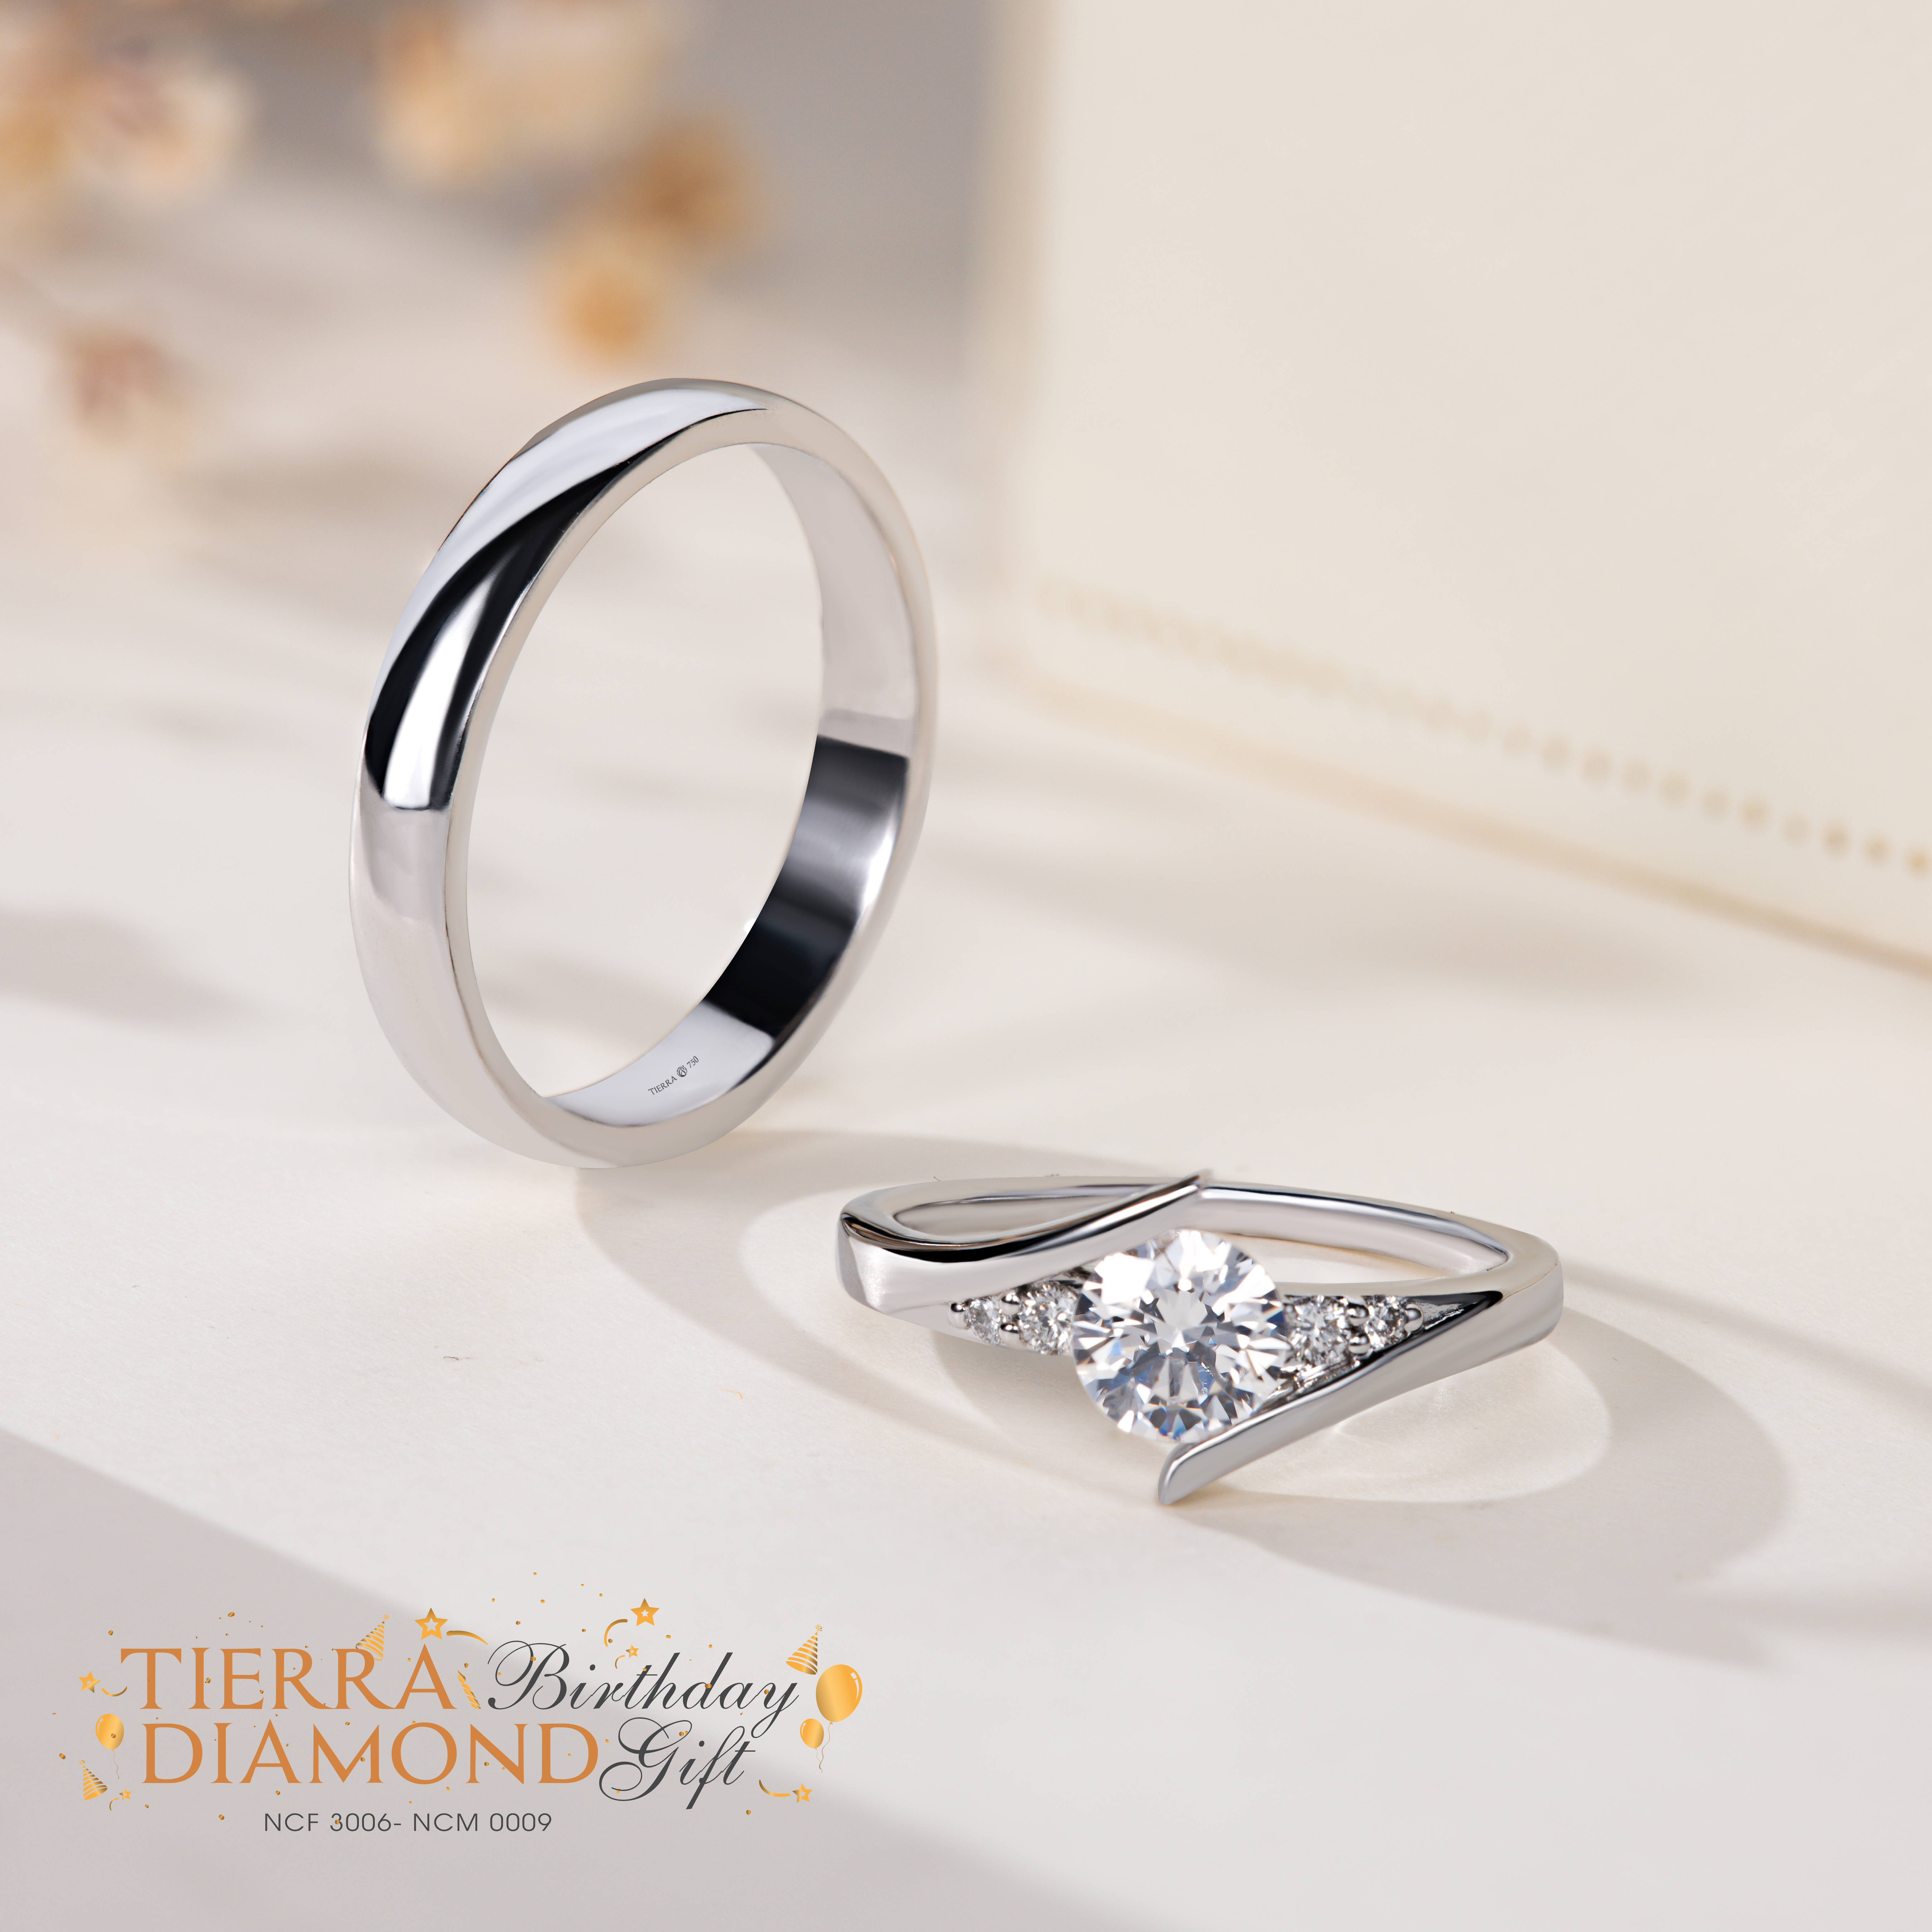 Chọn mua nhẫn cưới kim cương tự nhiên ở đâu - Minh chứng của tình yêu vĩnh cửu - 6